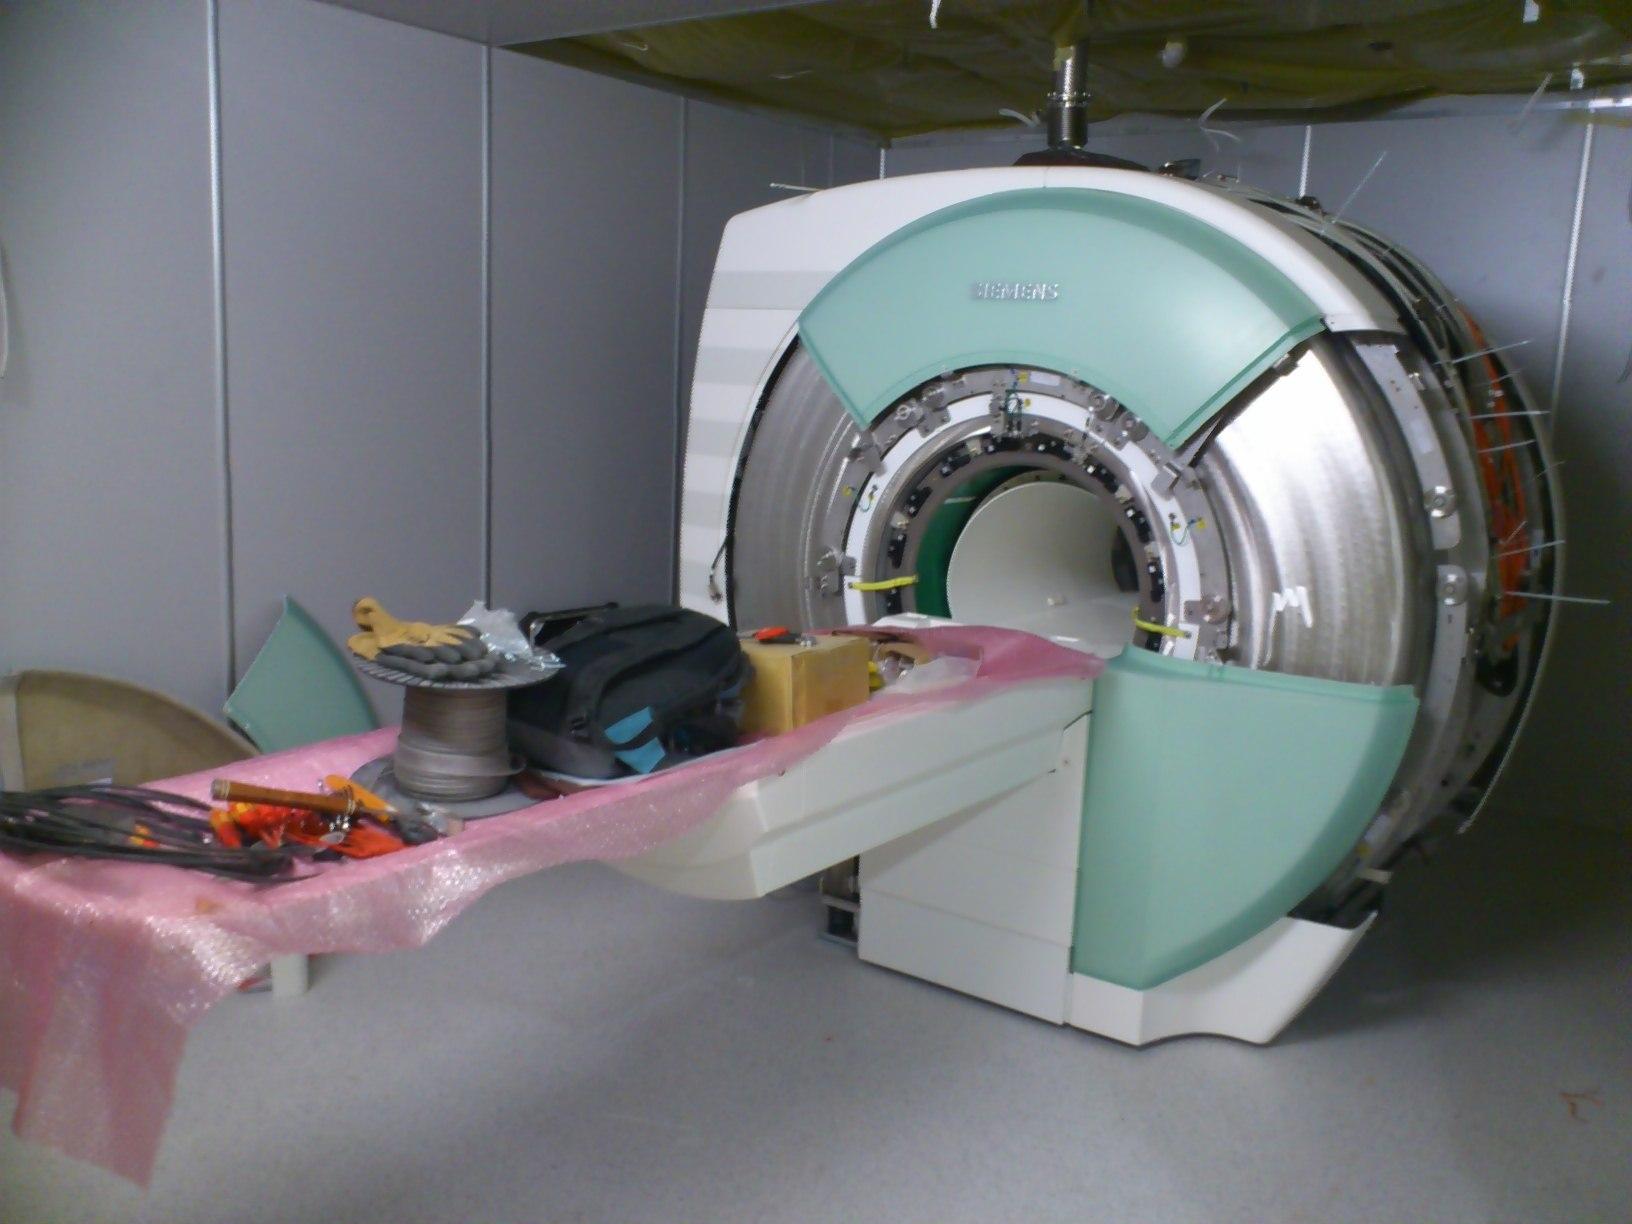 Zabudowa klatki rezonansu magnetycznego, Szpital Abramowicka